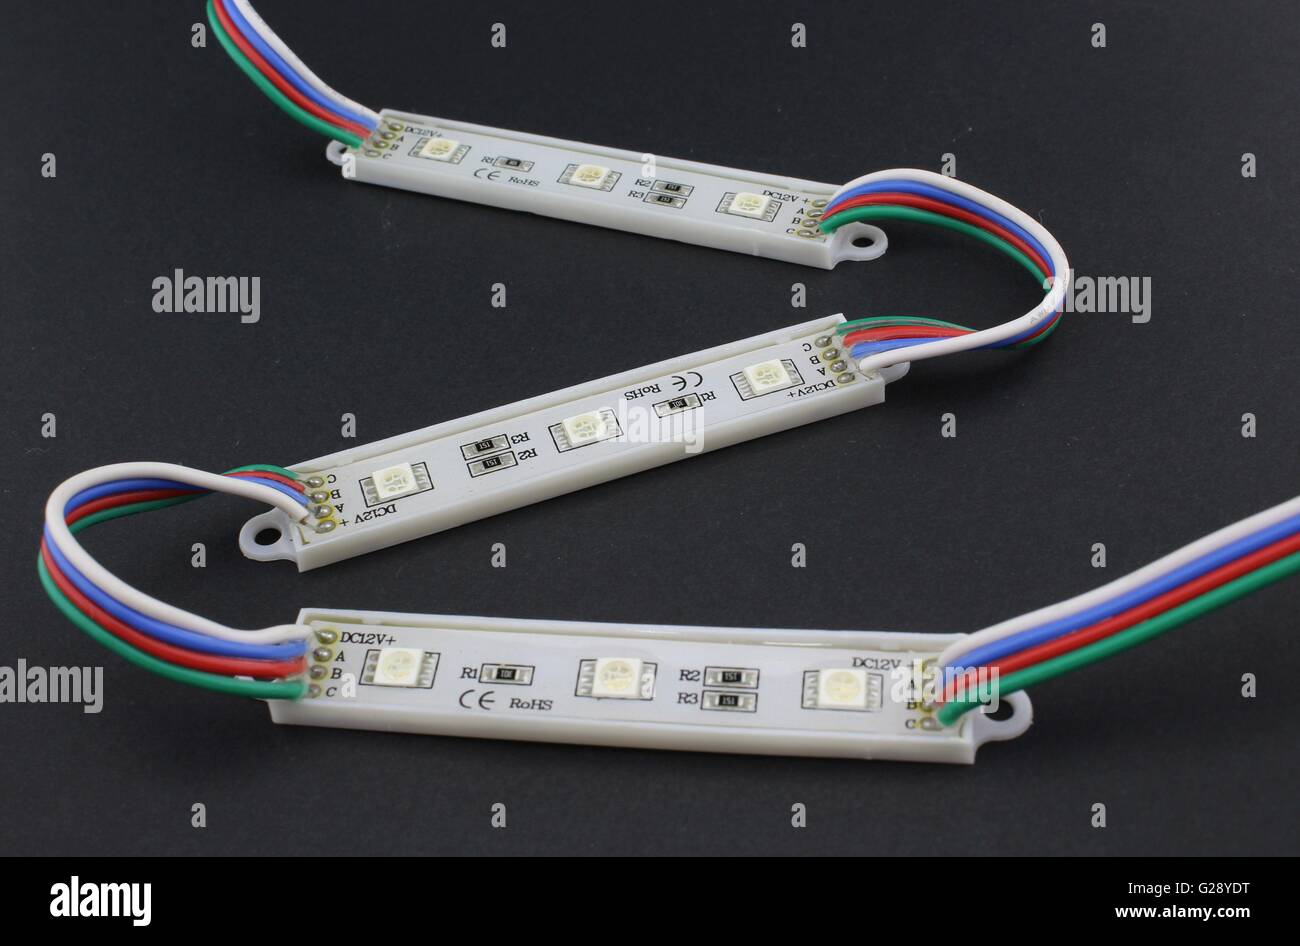 LED-Streifen auf schwarzem Hintergrund Stockfotografie - Alamy